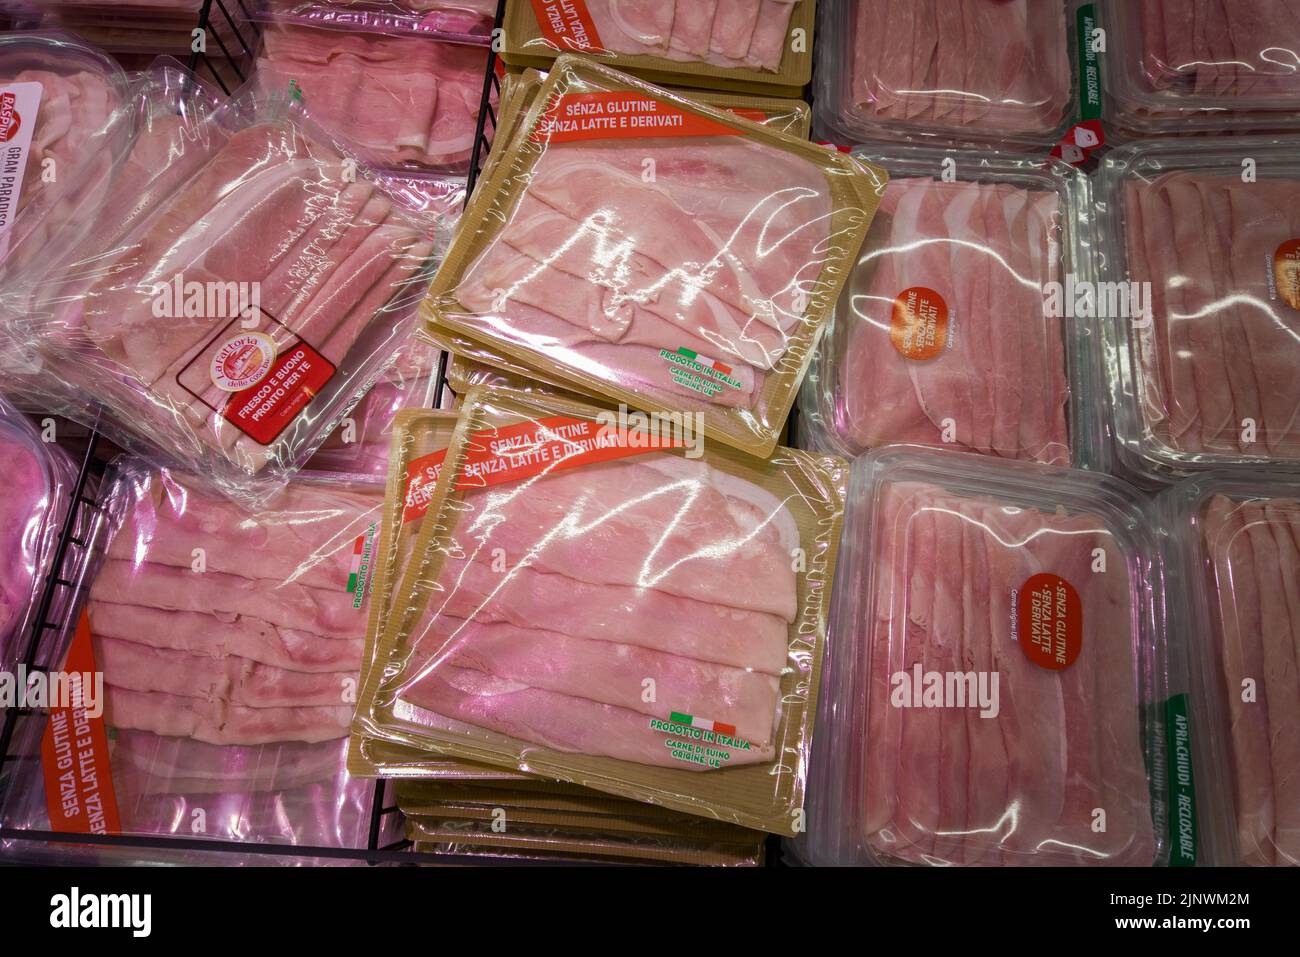 Fossano, Italie - 11 août 2022 : boîtes de tranches de jambon cuites sans gluten dans le comptoir réfrigéré du supermarché italien. Tex:senza glutine senza l Banque D'Images